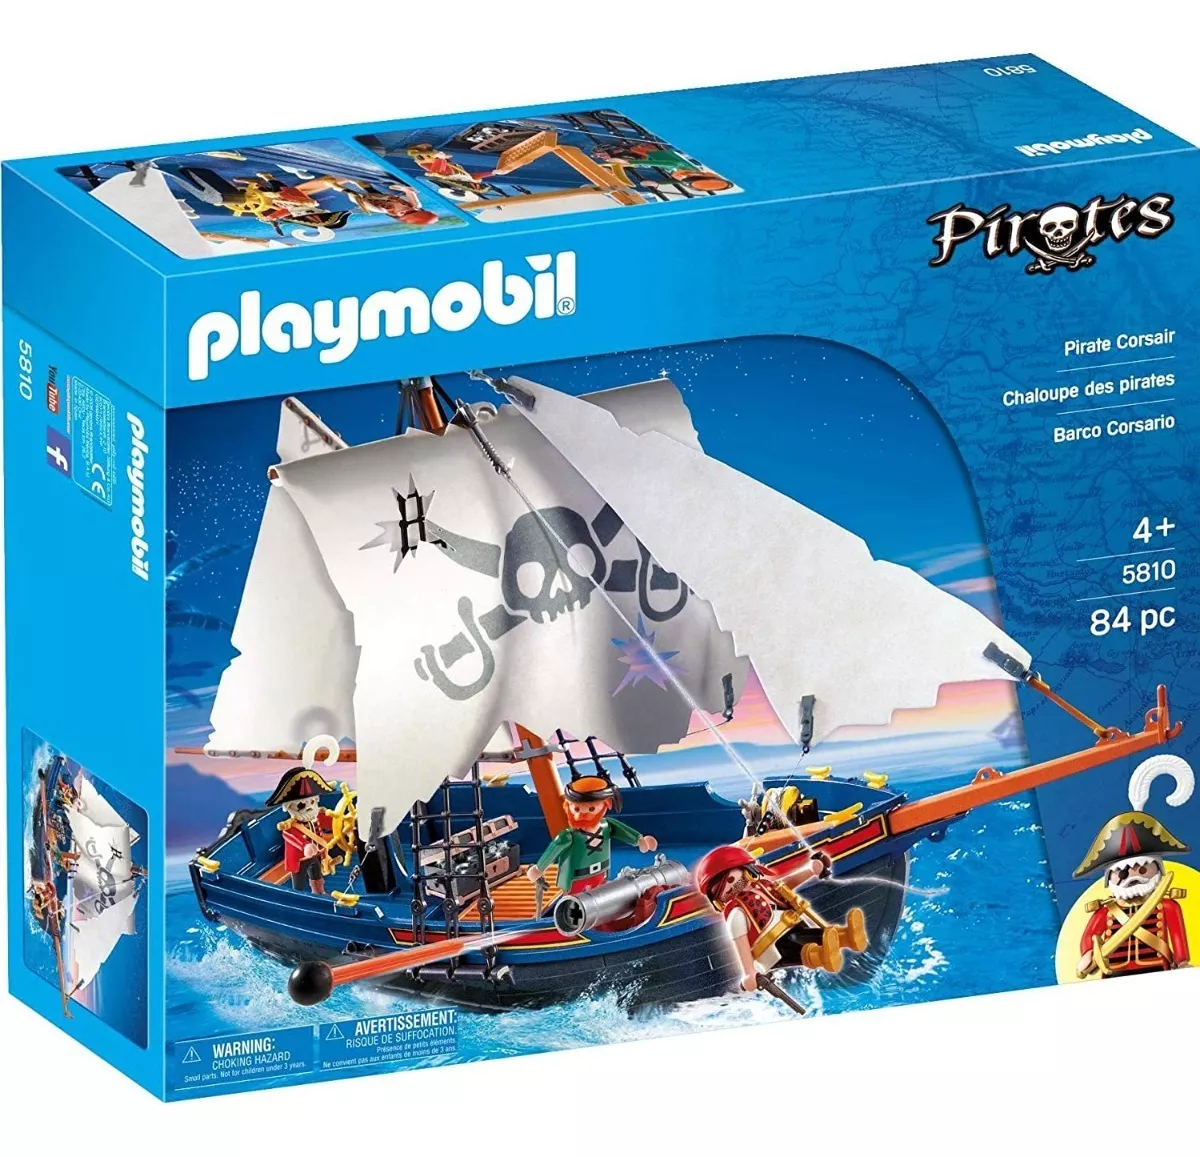 Segunda imagen para búsqueda de playmobil piratas